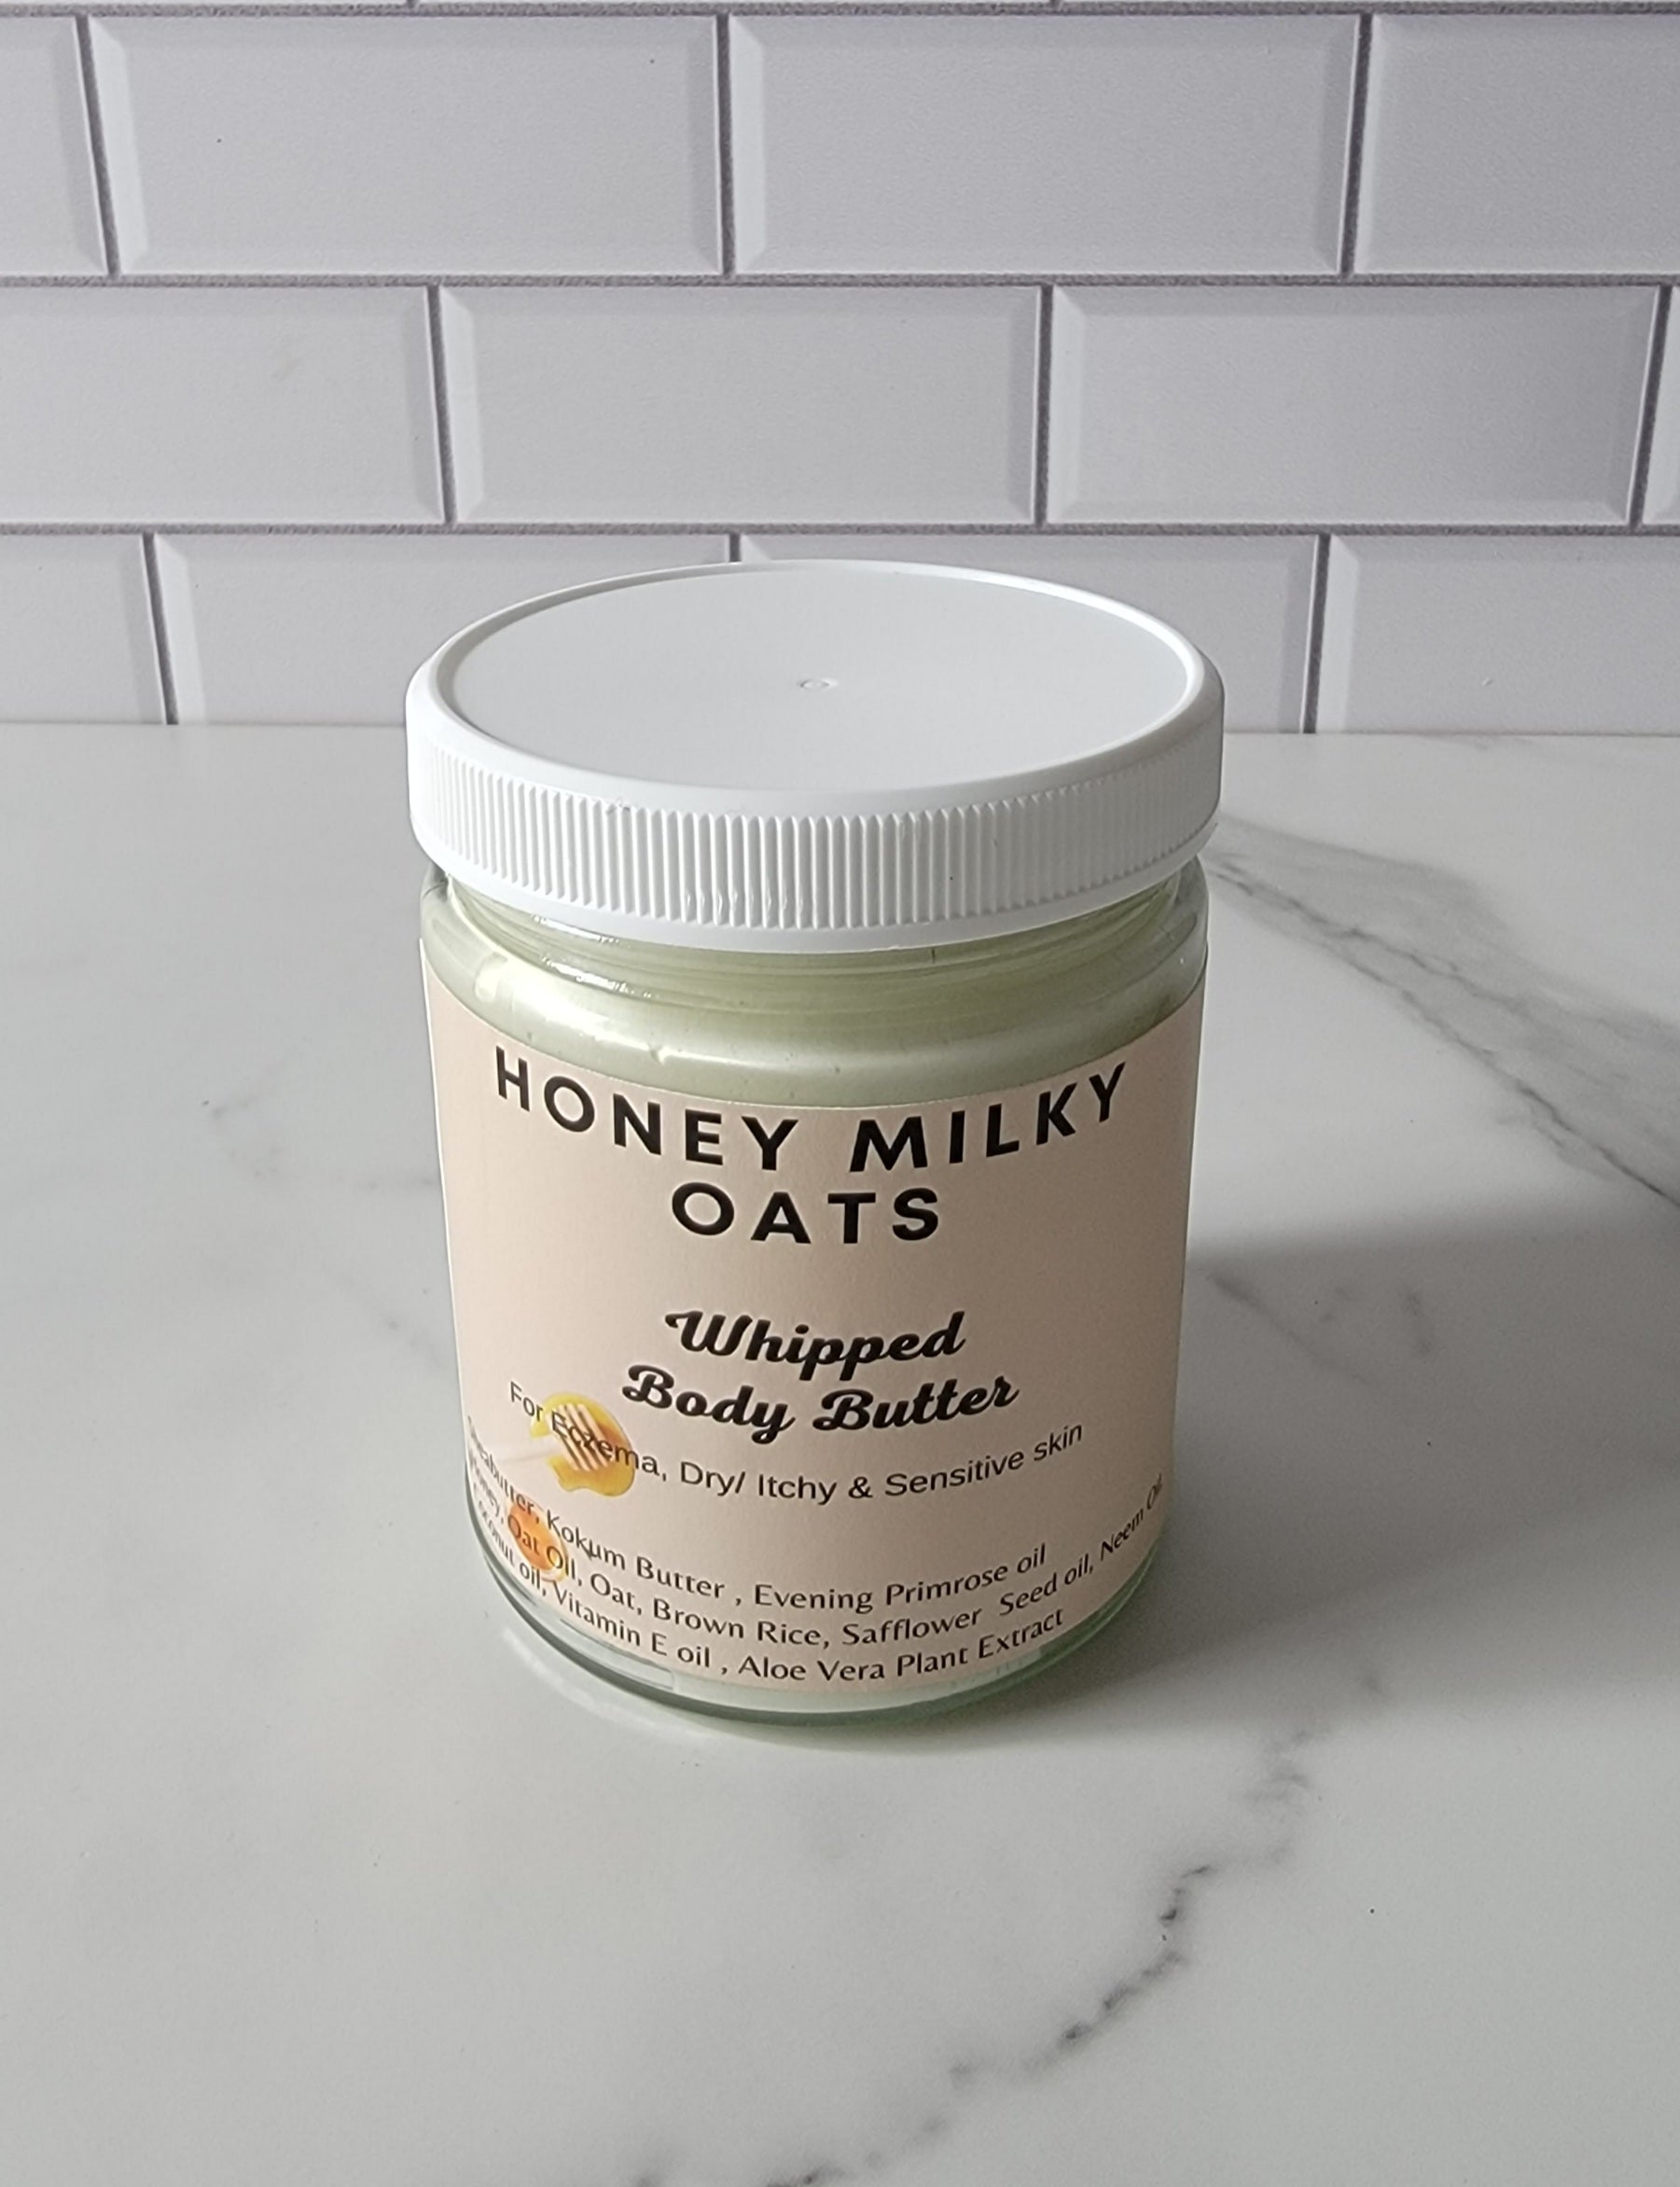 Honey Milky Oats Whipped Body Butter. 9 oz